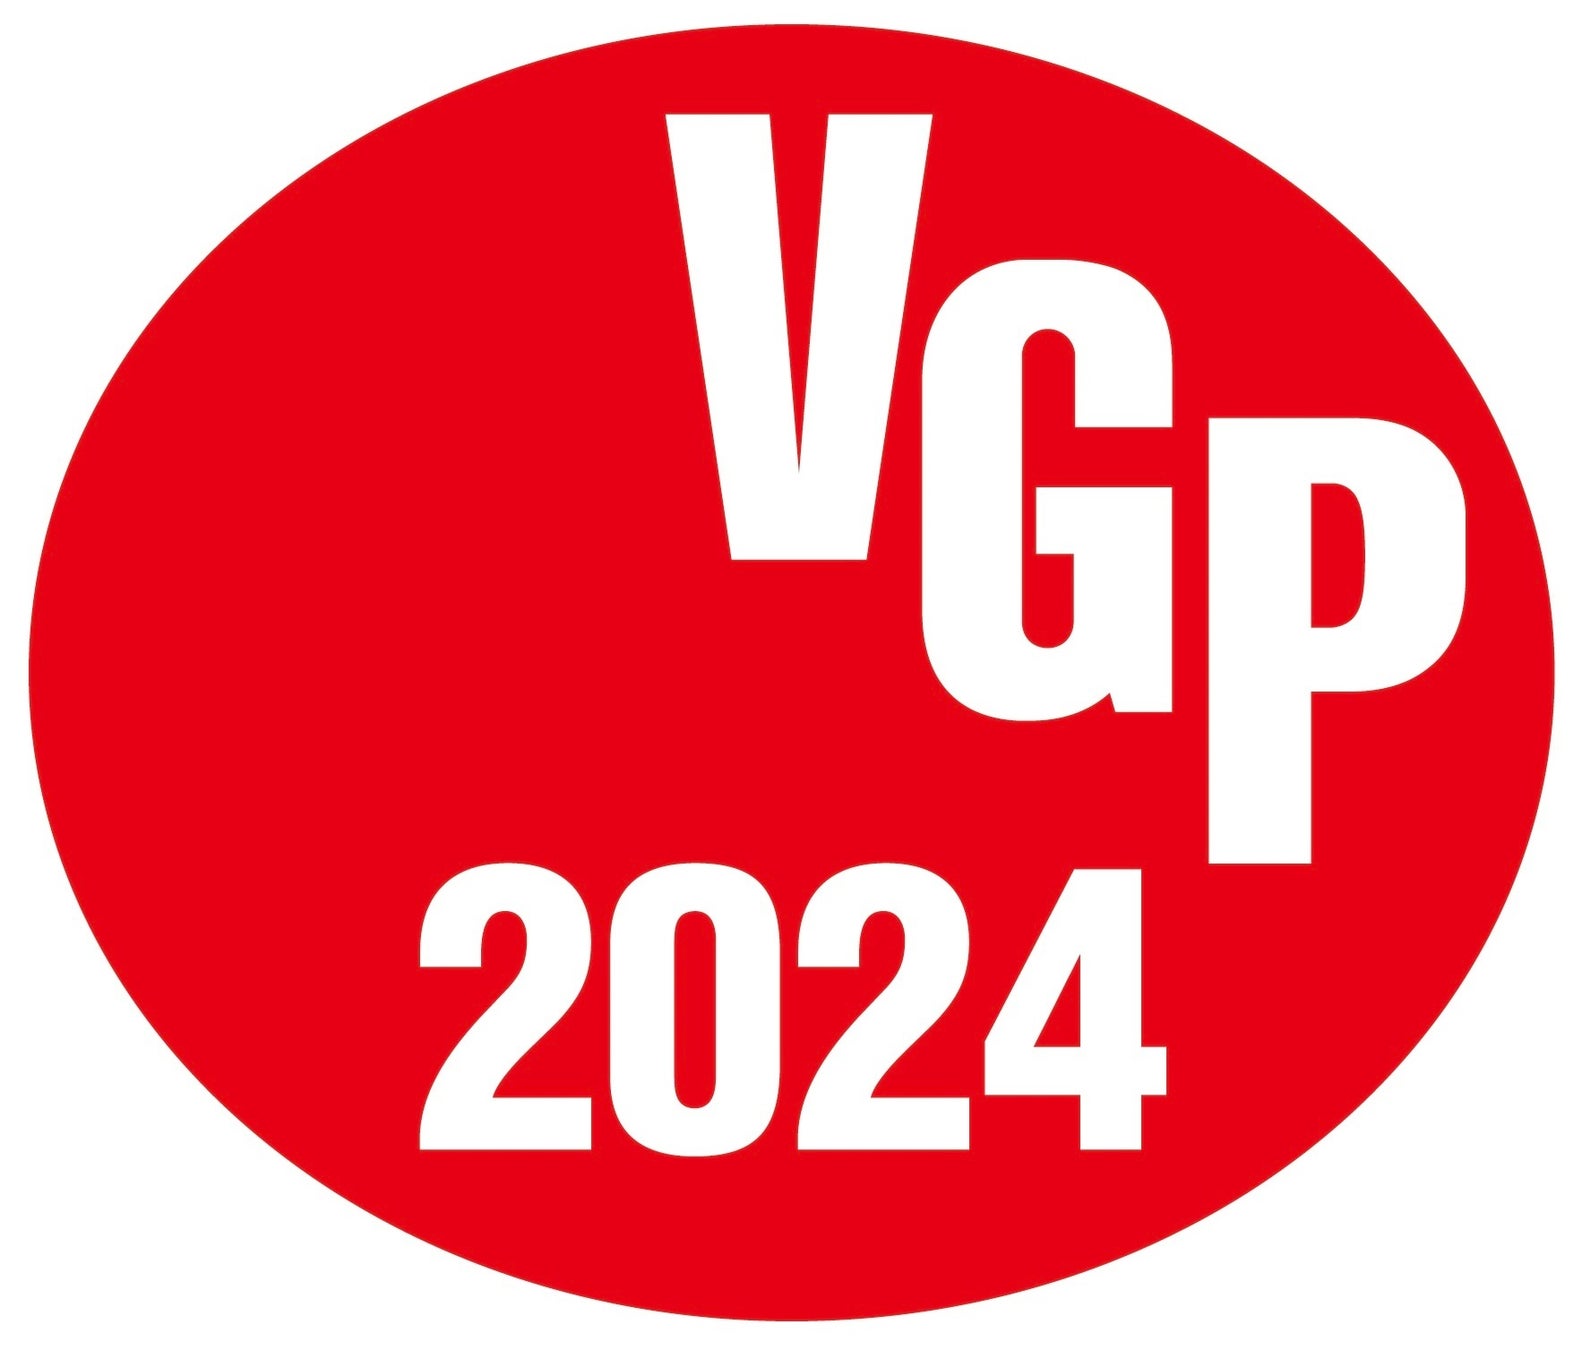 アワード「VGP2024」のロゴマーク